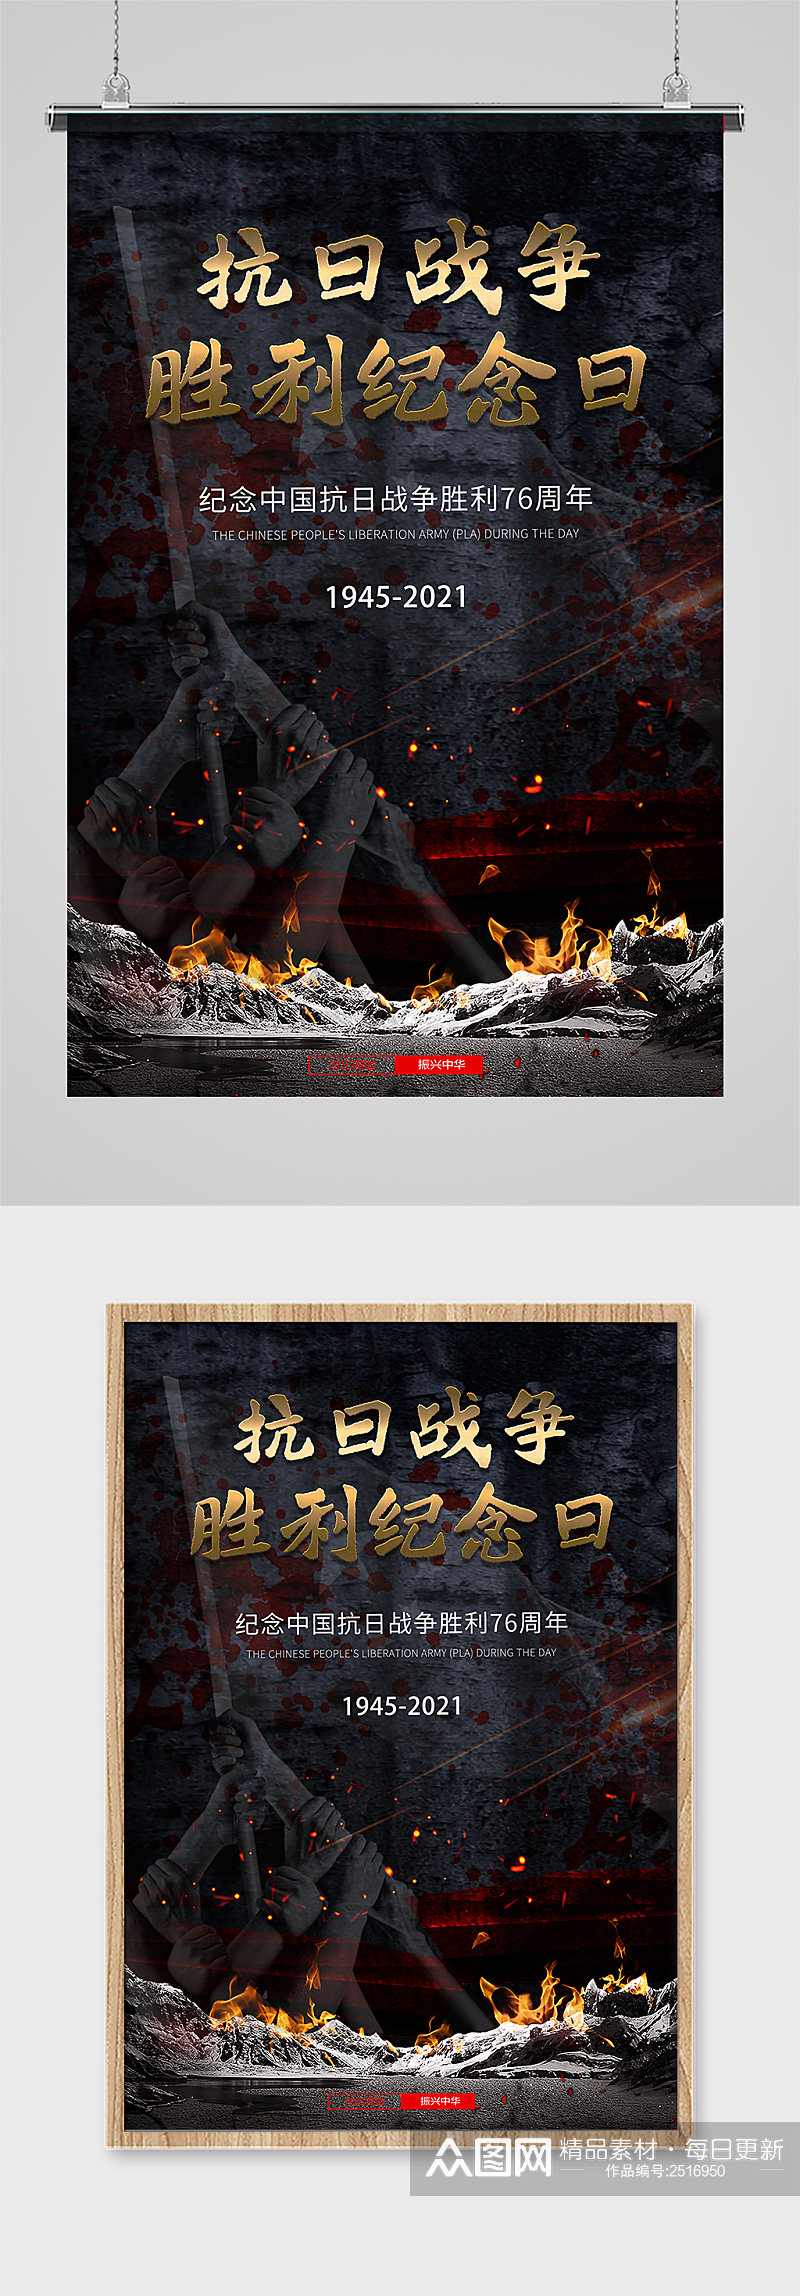 中国抗战胜利纪念日 海报素材